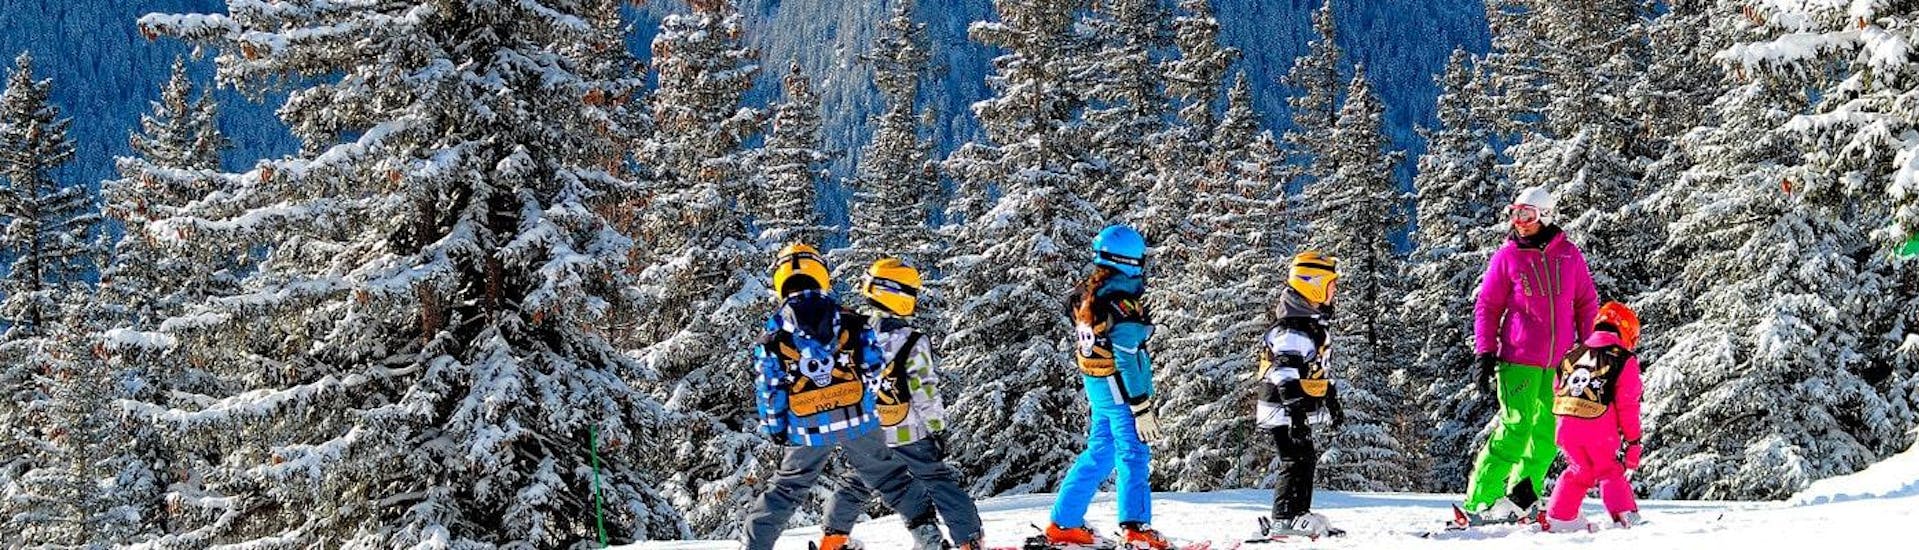 Un groupe d'amis fait des progrès rapides durant leur Cours particulier de ski Enfants - Haute saison - Tous âges avec l'école de ski Evolution 2 Val d'Isère.